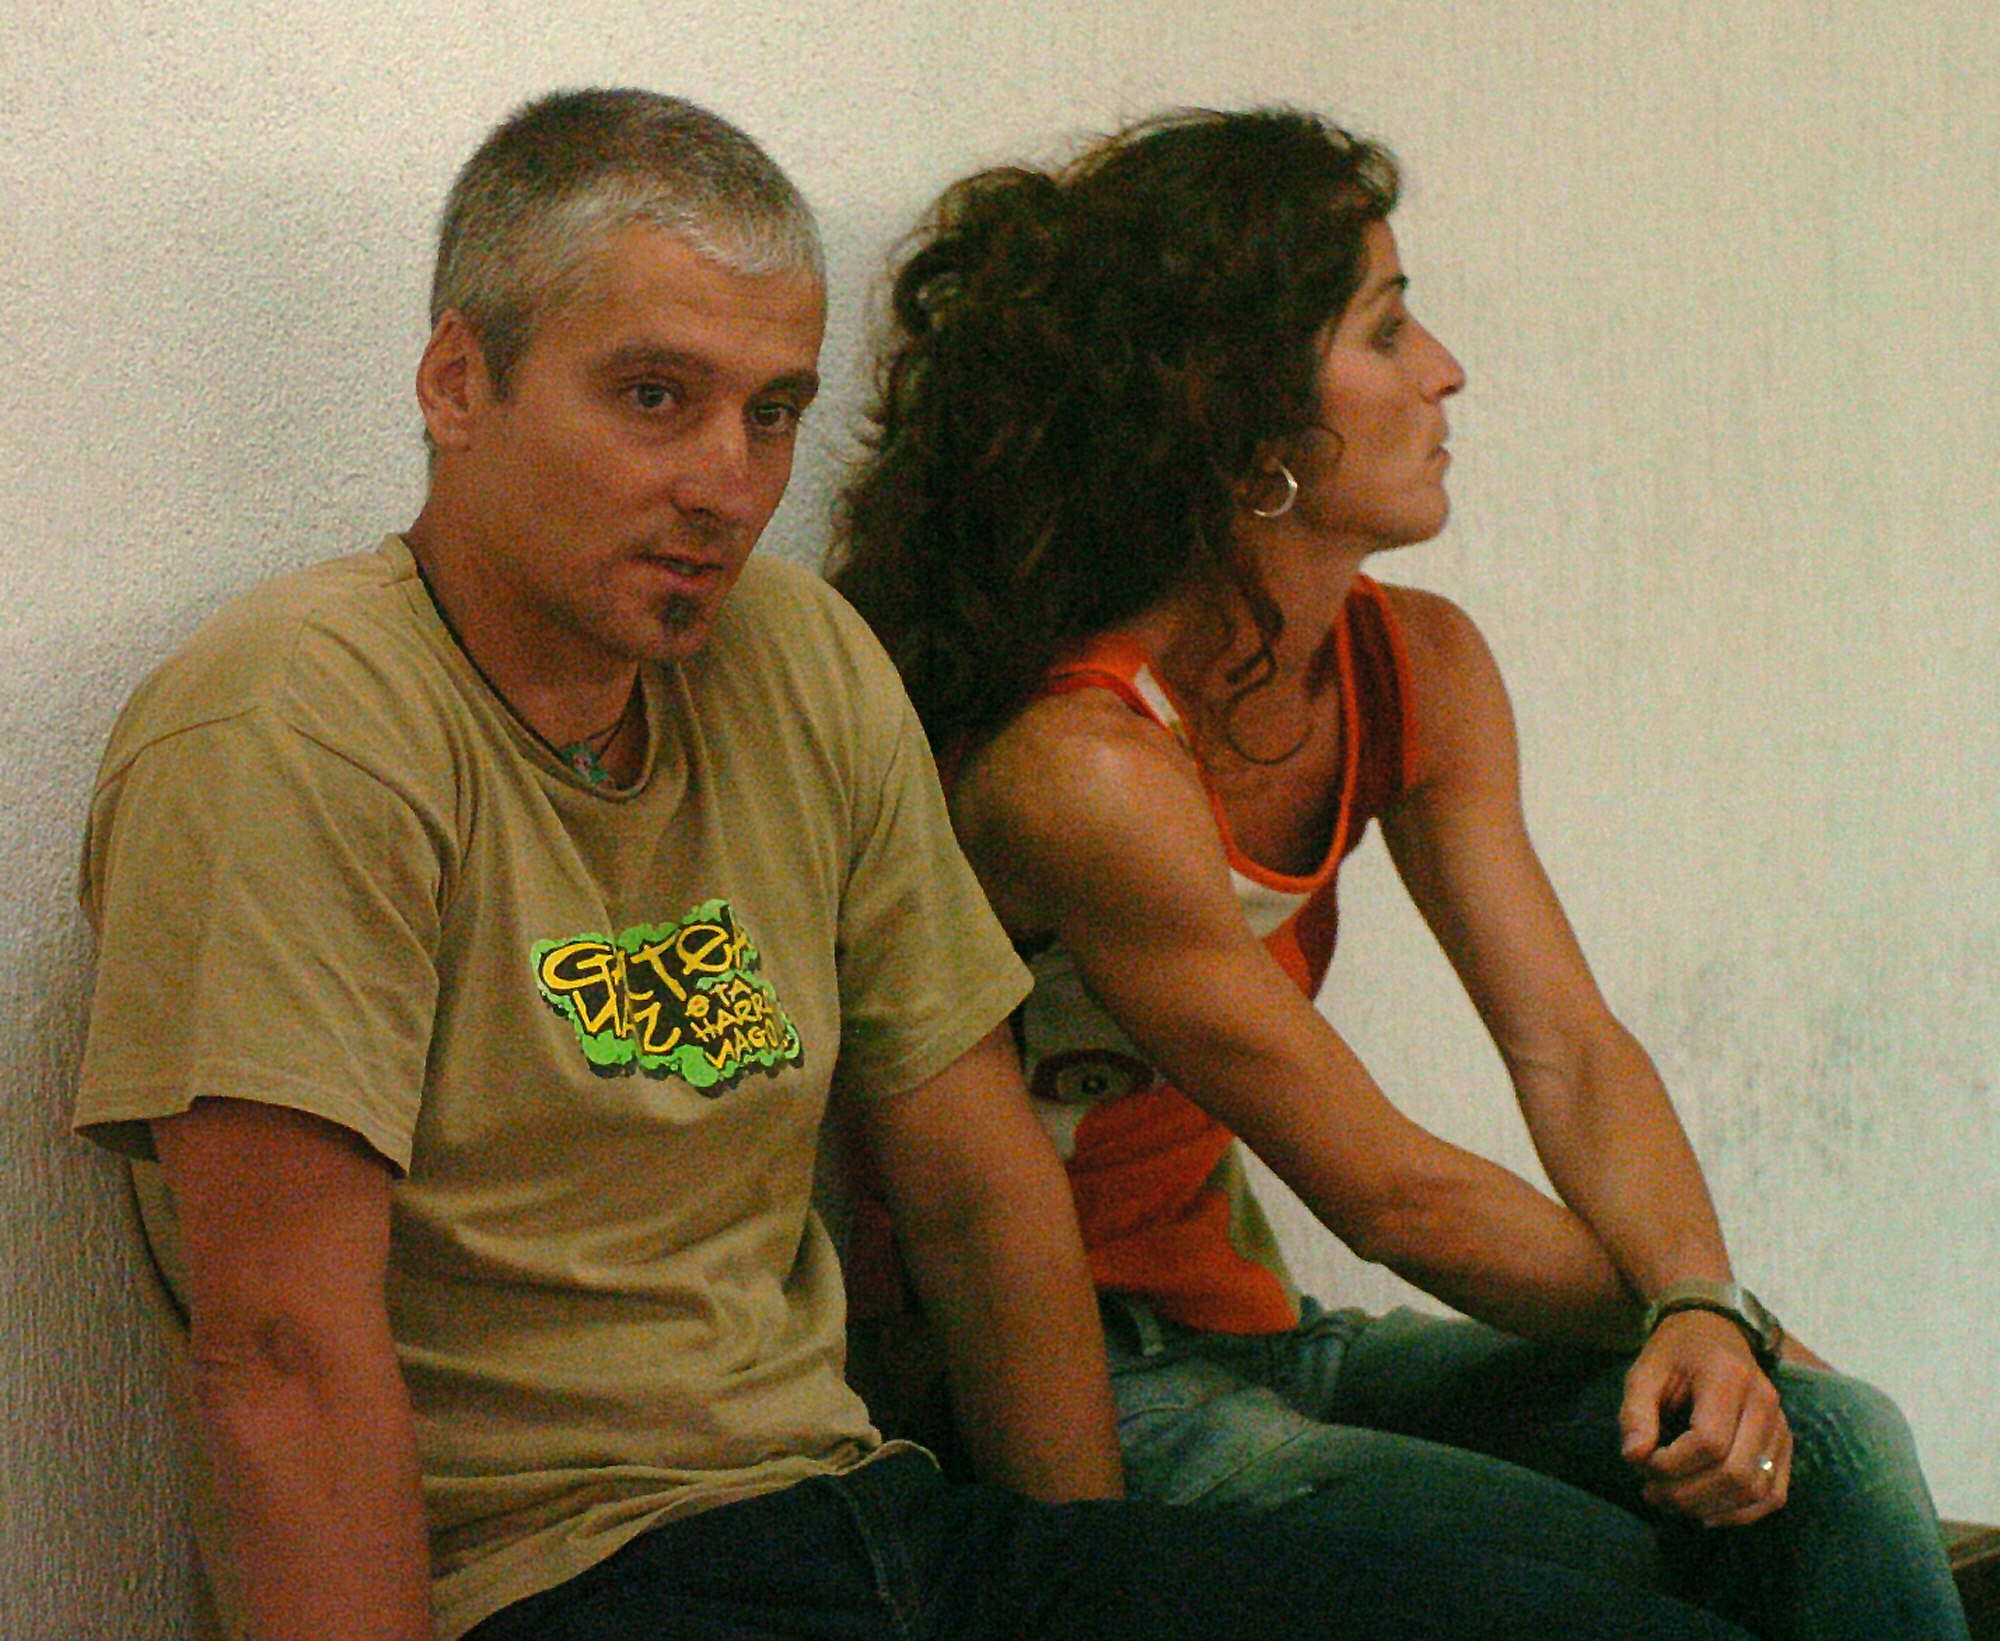 Jos Javier Garca Gaztelu 'Txapote' junto a Irantxu Gallastegi en un banquillo de la Audiencia Nacional.